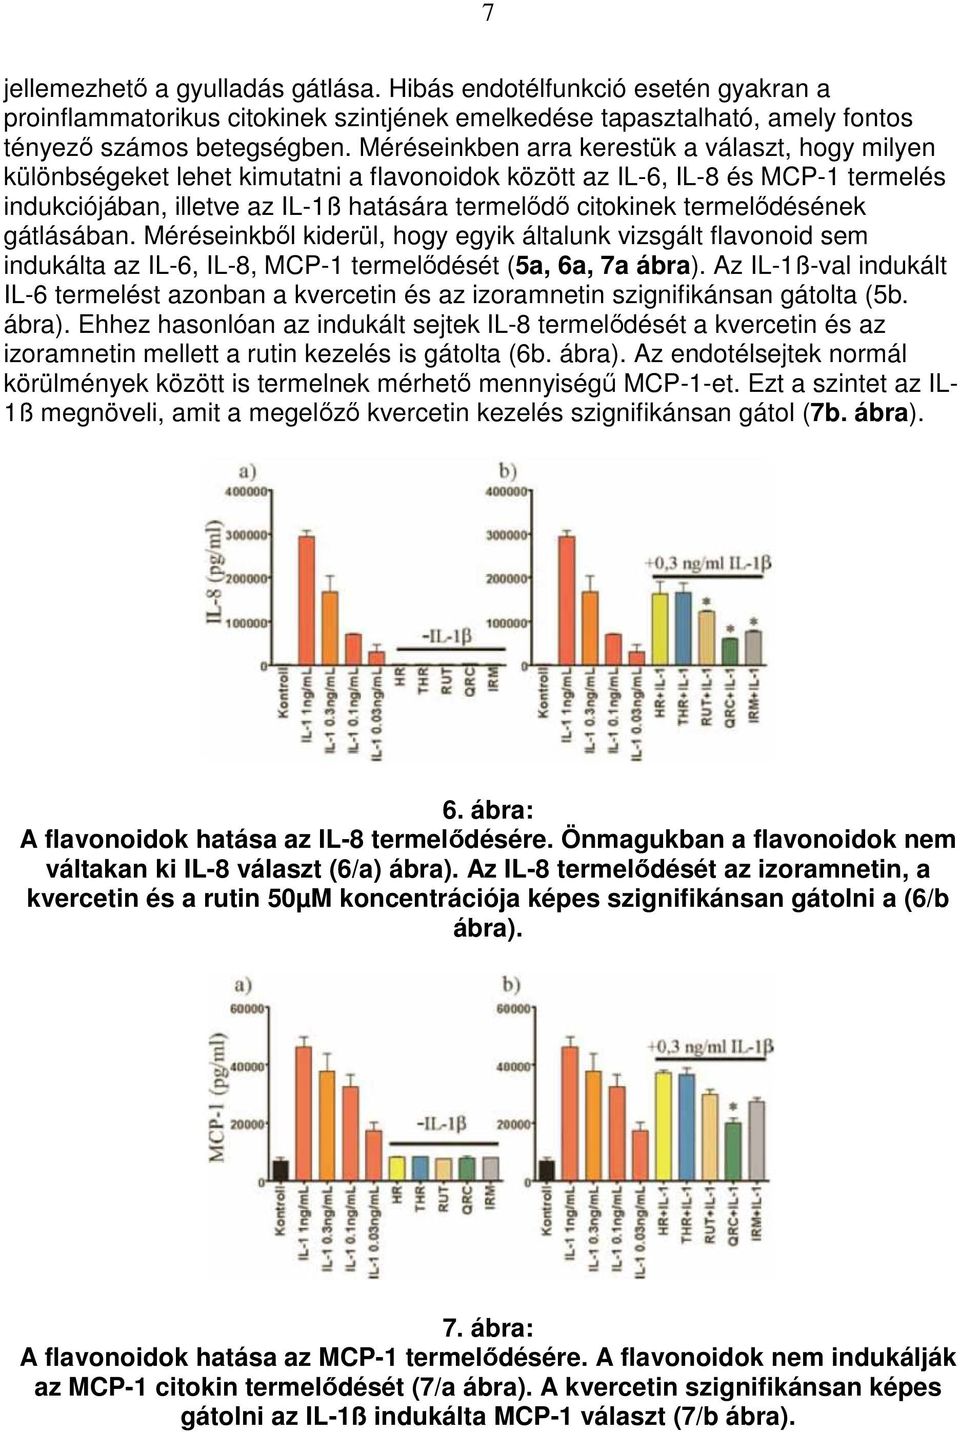 termelıdésének gátlásában. Méréseinkbıl kiderül, hogy egyik általunk vizsgált flavonoid sem indukálta az IL-6, IL-8, MCP-1 termelıdését (5a, 6a, 7a ábra).